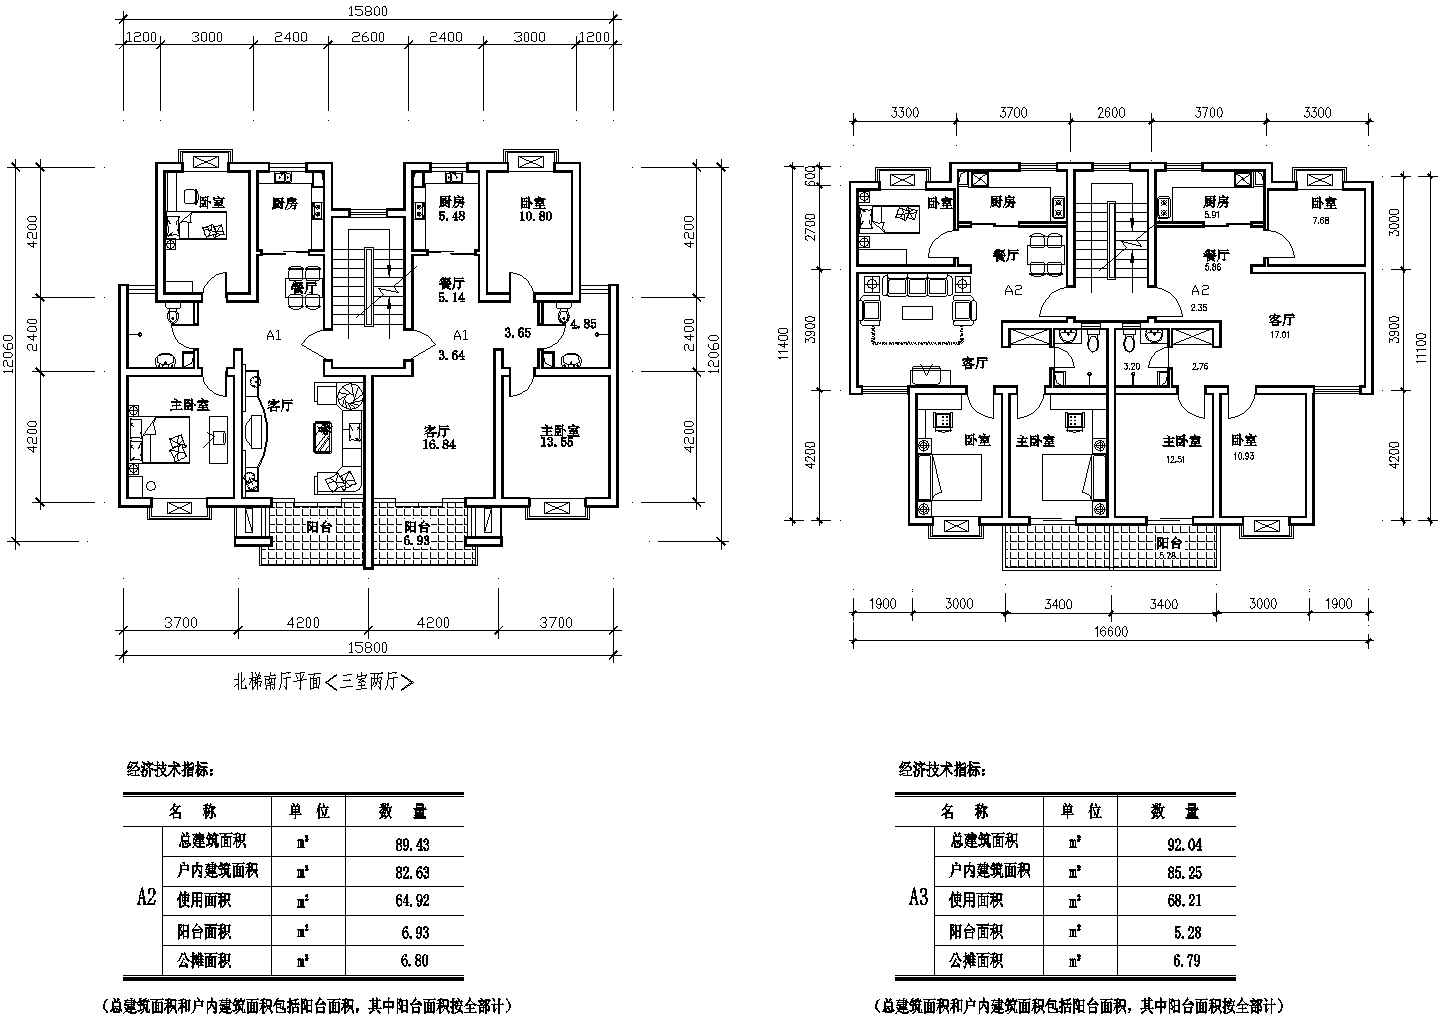 89平方米多层一梯两户住宅户型设计cad图(含效果图)